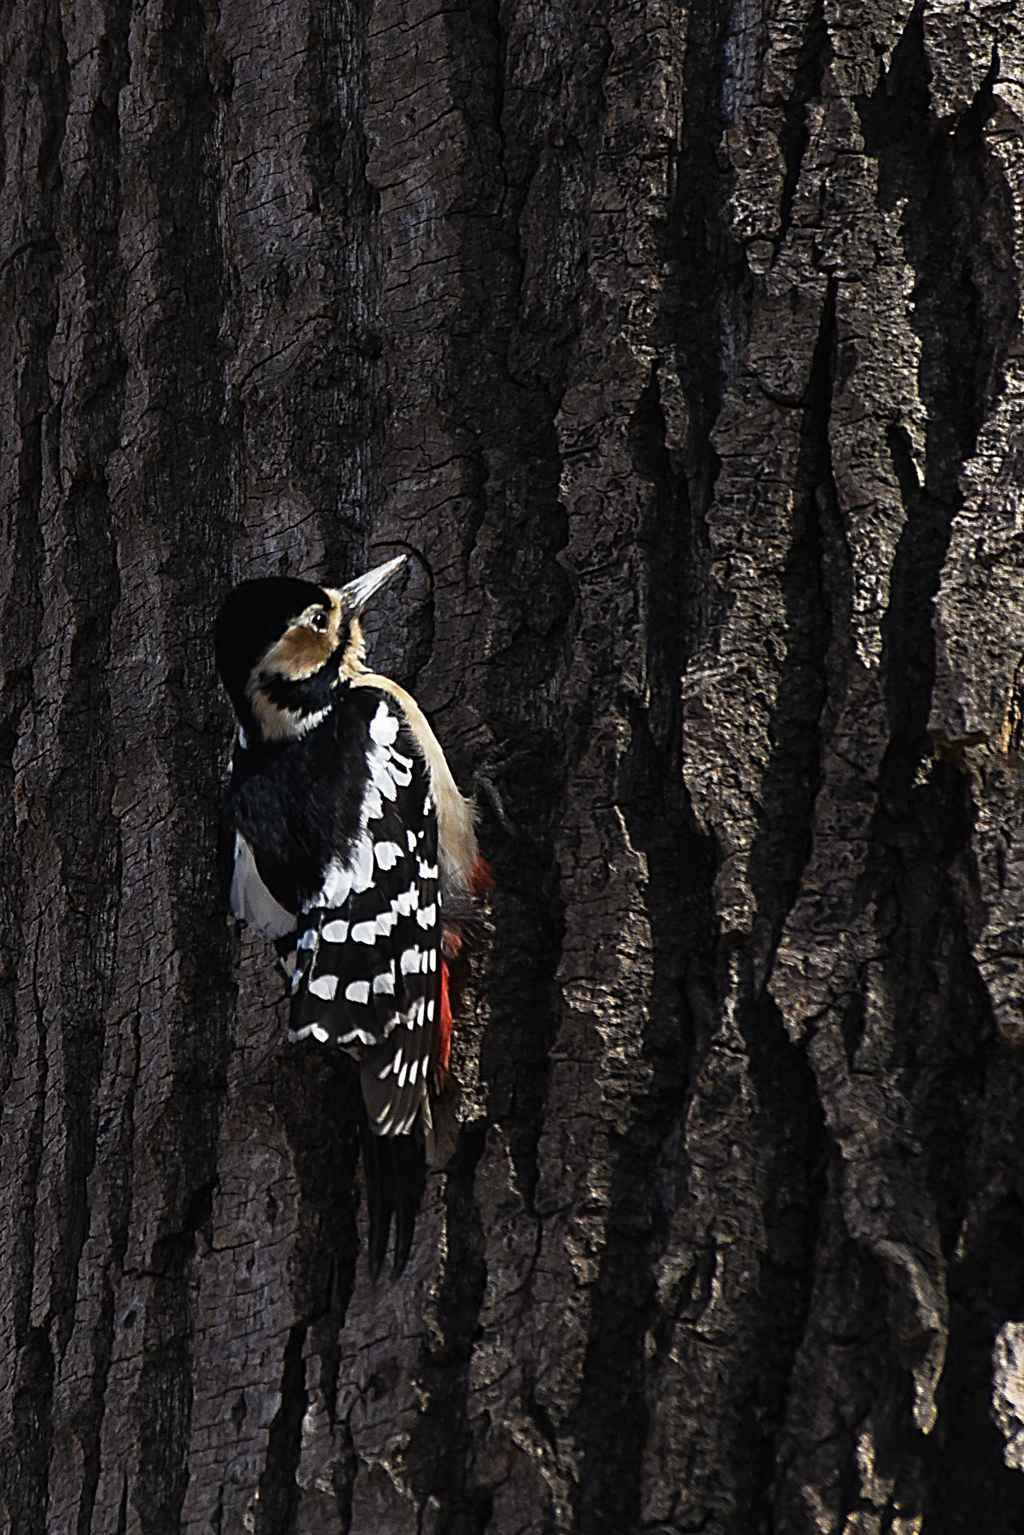 【高清图】大斑啄木鸟育雏-2-中关村在线摄影论坛